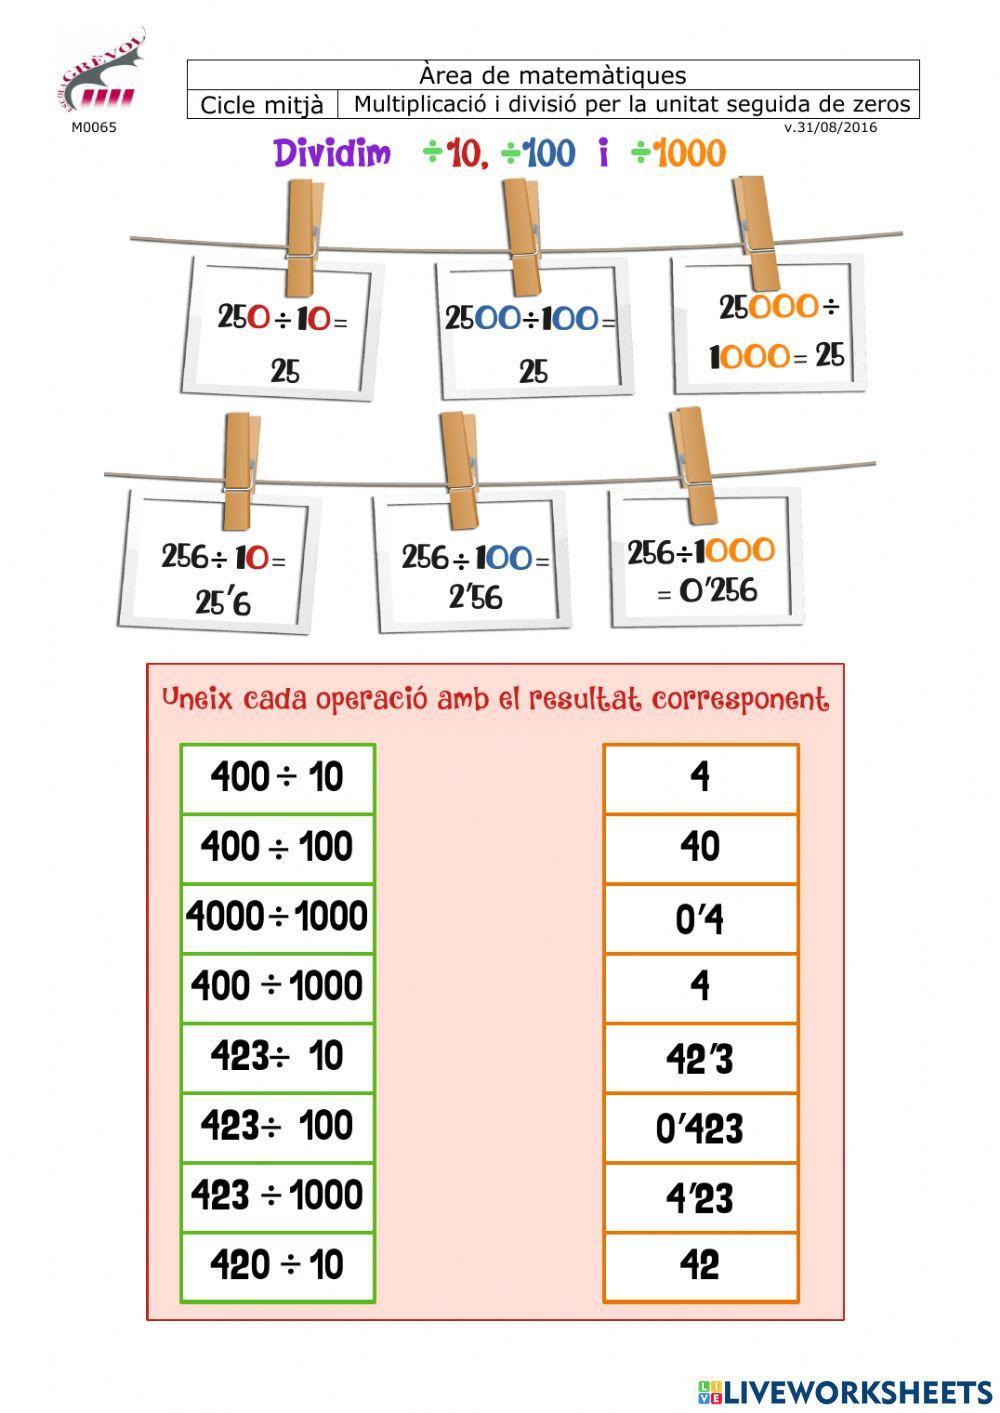 Multiplicacions i divisions per la unitat seguida de zeros